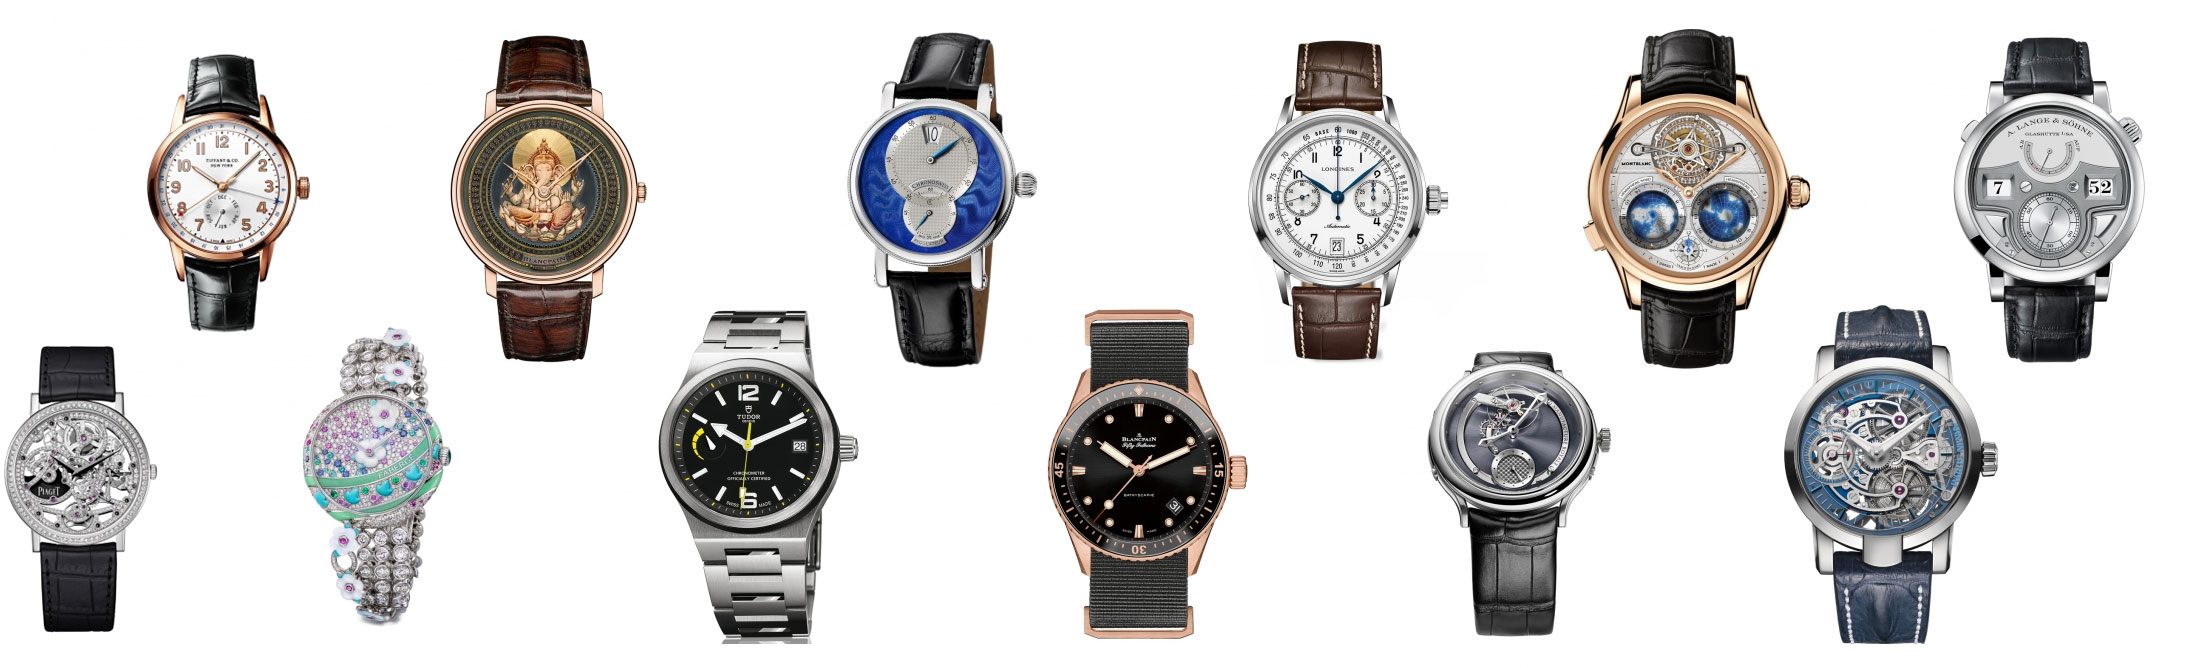 Grand Prix d'Horlogerie de Geneve 2015 Nominees: Best Watches in the ...